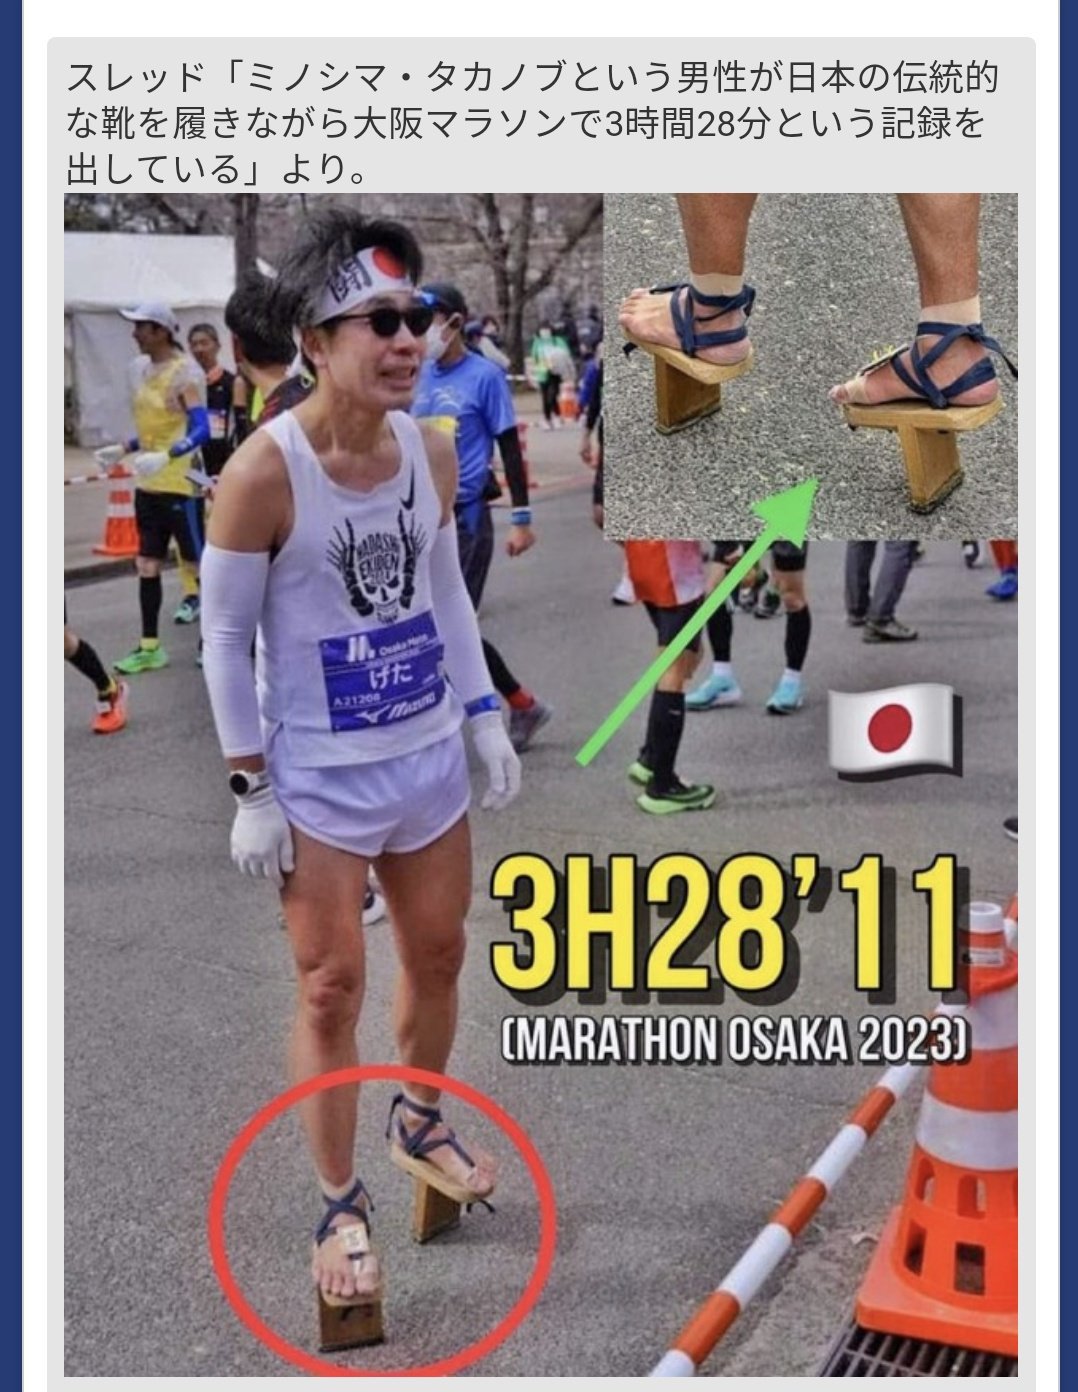 14 오사카 마라톤 대회에서 기인 등장 게다 신고 마라톤 완주 기록은 3시간 28분 11초.jpg